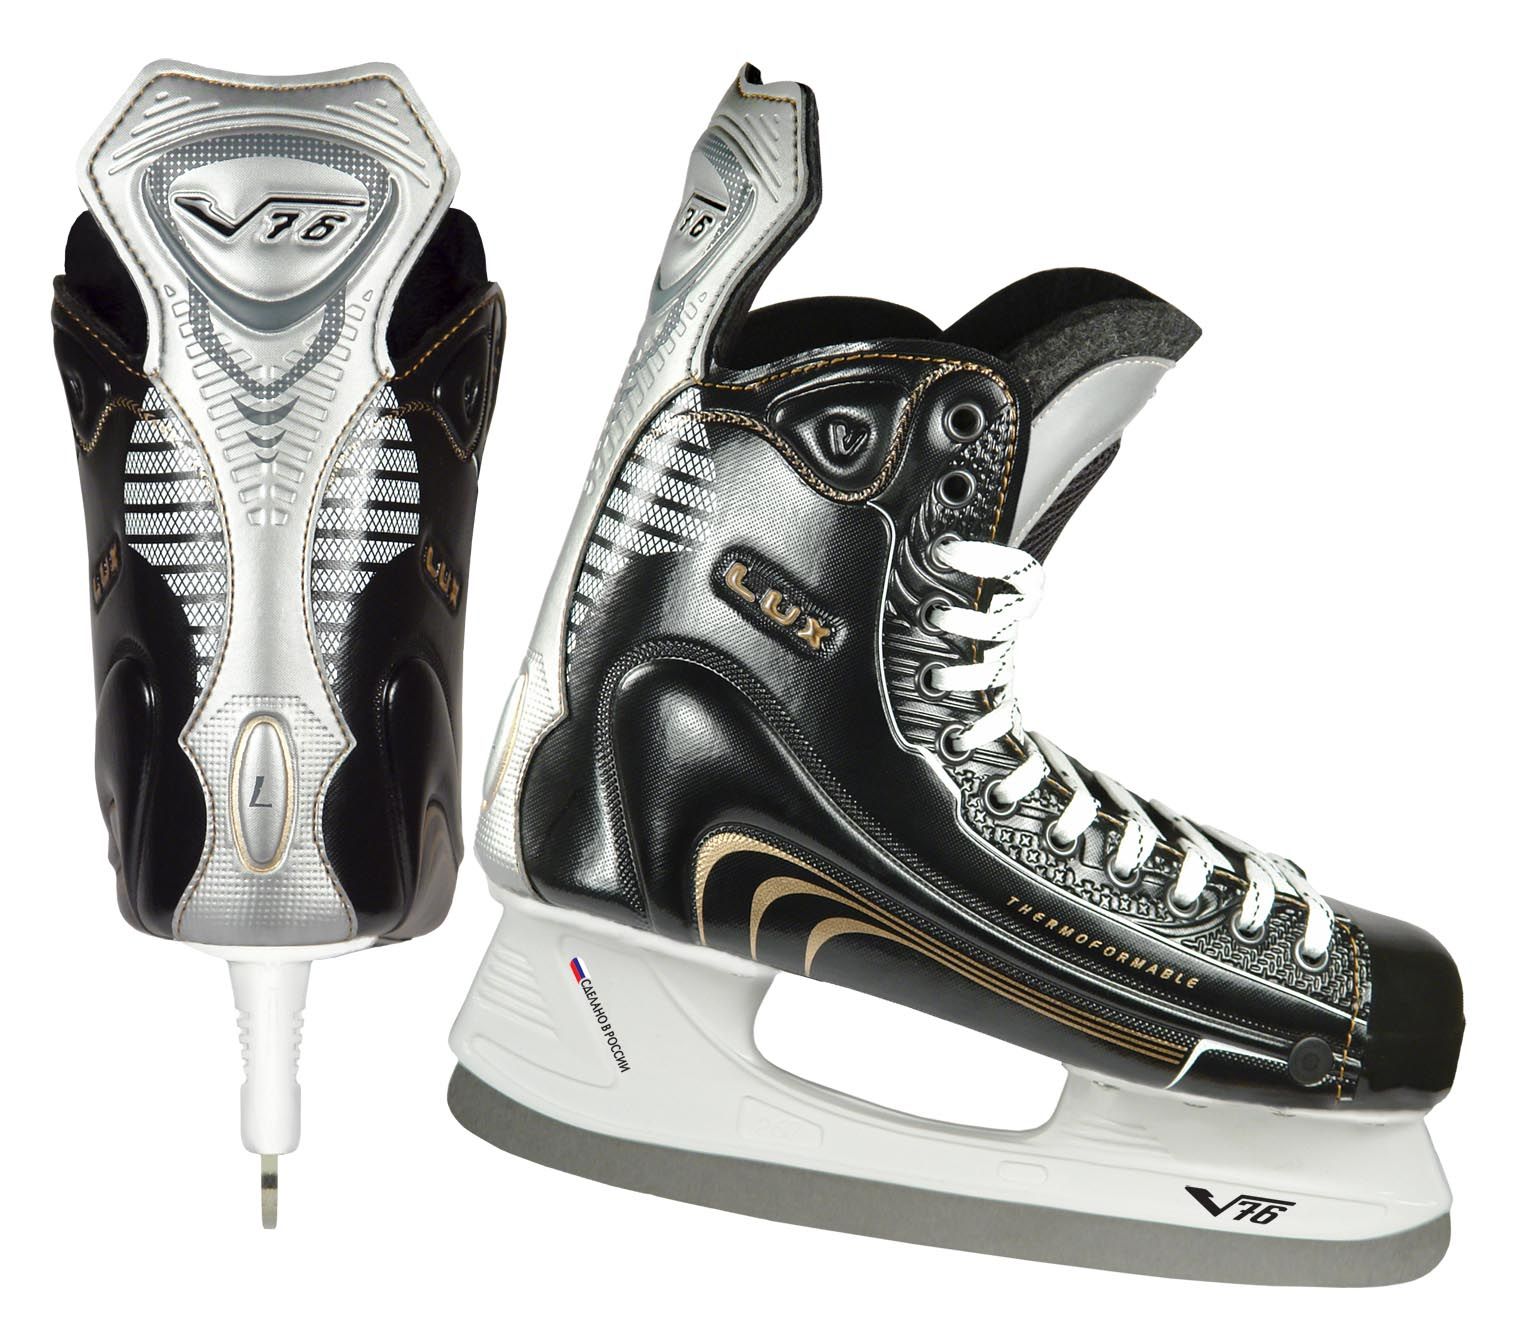 Коньки хоккейные V76 Lux-S термоформуемые